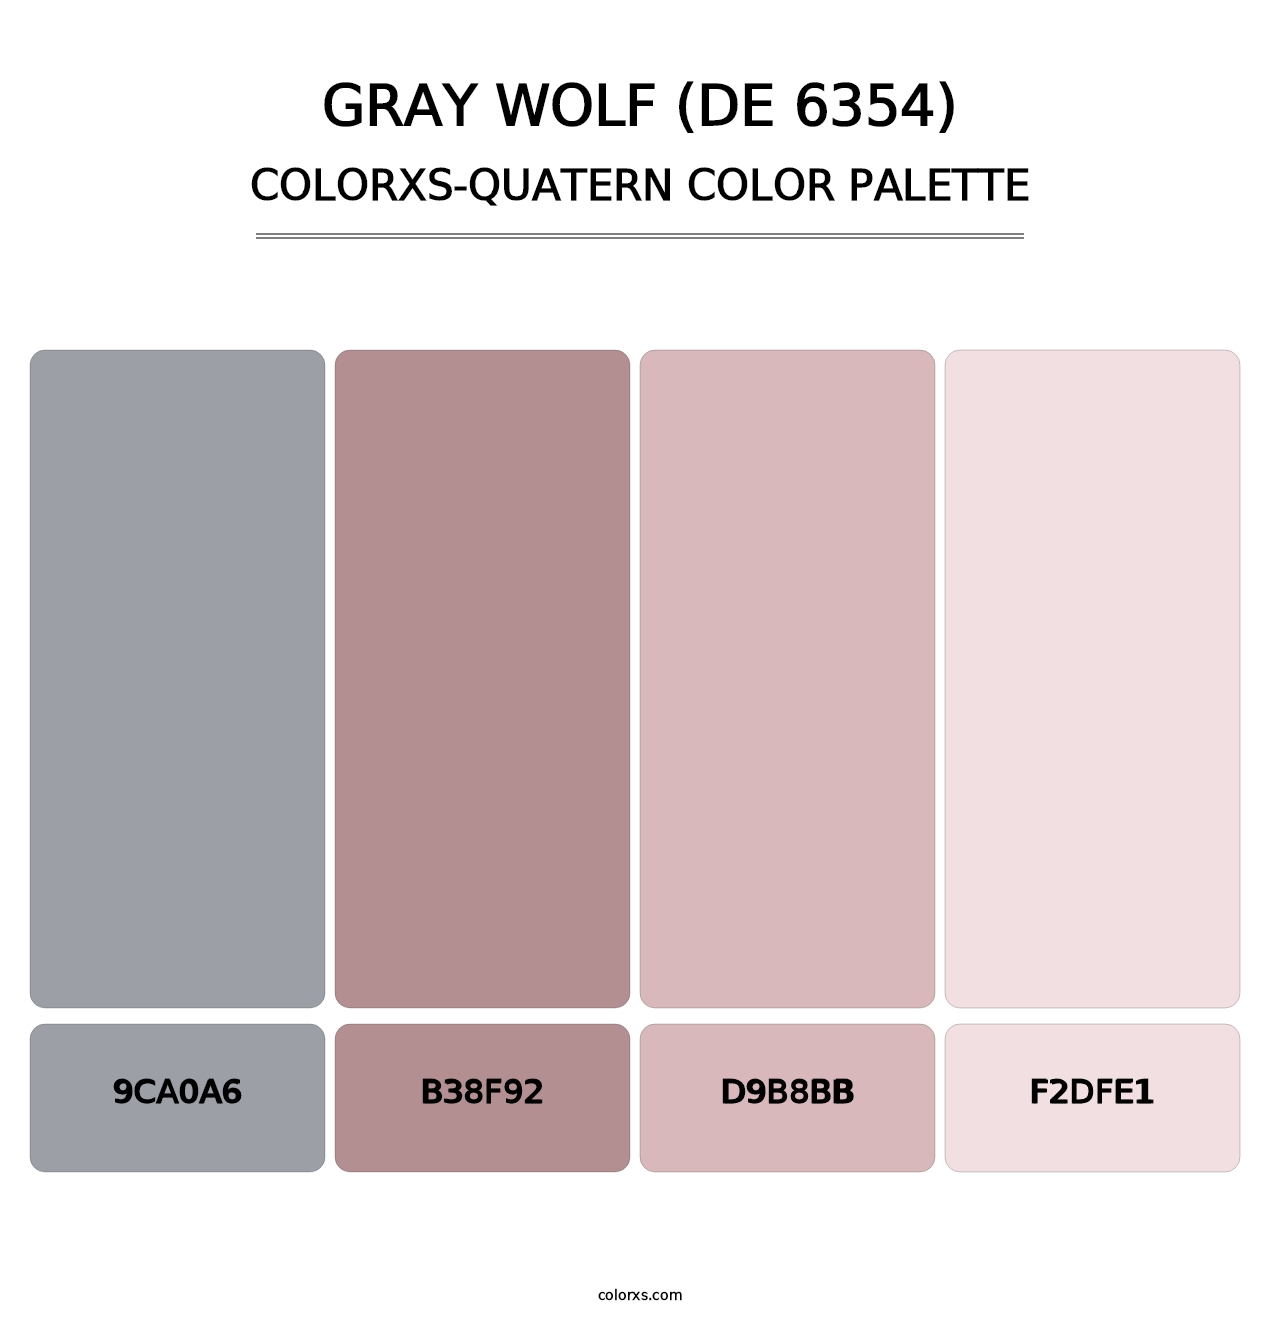 Gray Wolf (DE 6354) - Colorxs Quatern Palette